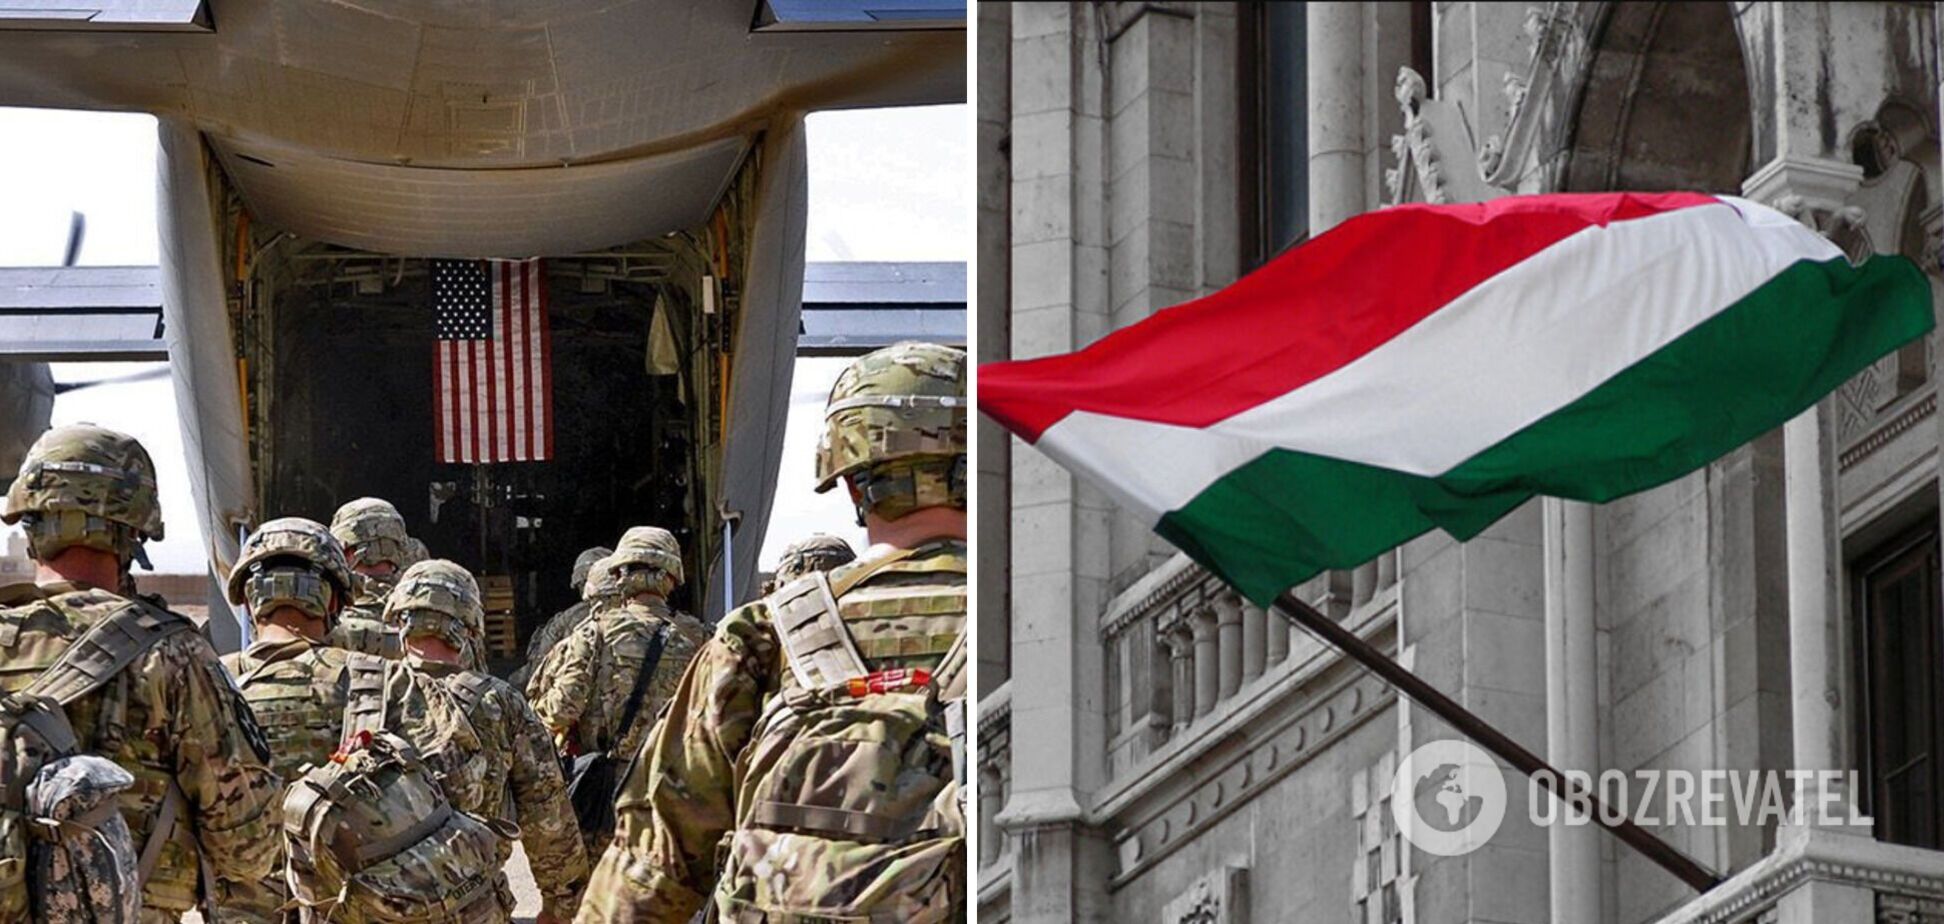 Венгрия получила запрос от США на размещение дополнительных войск, ведутся переговоры